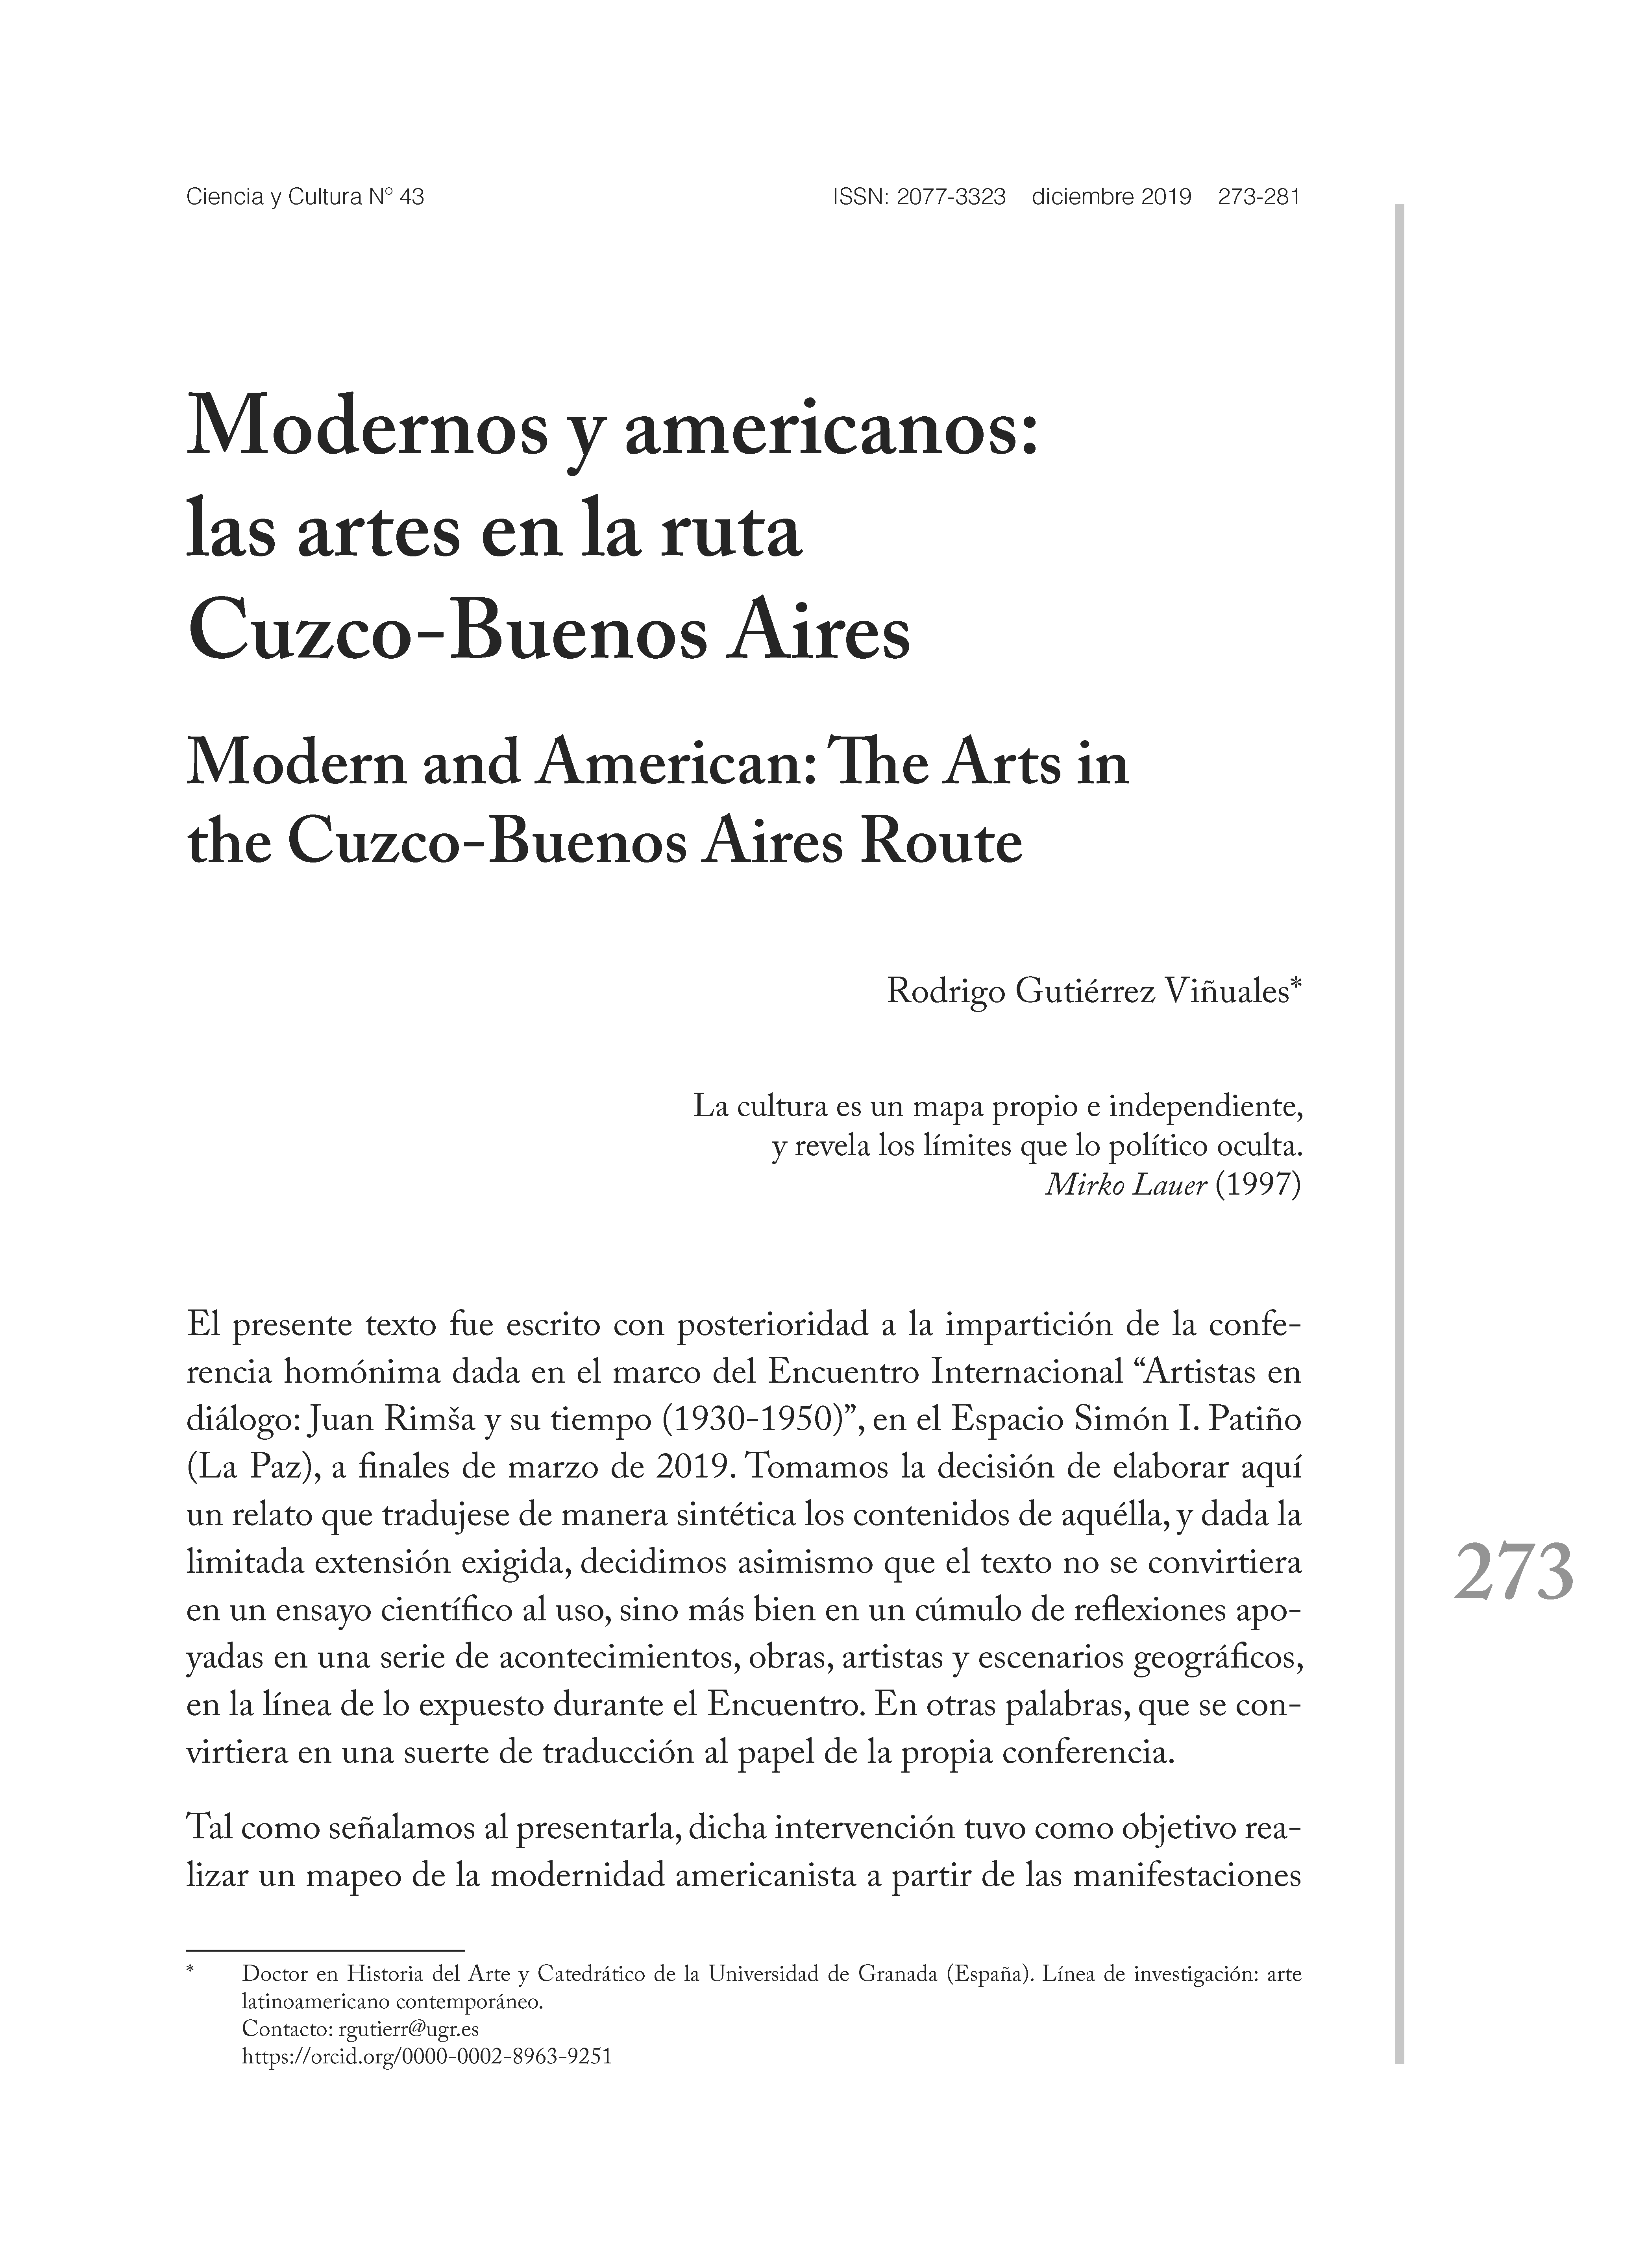 Modernos y americanos: las artes en la ruta Cuzco-Buenos Aires